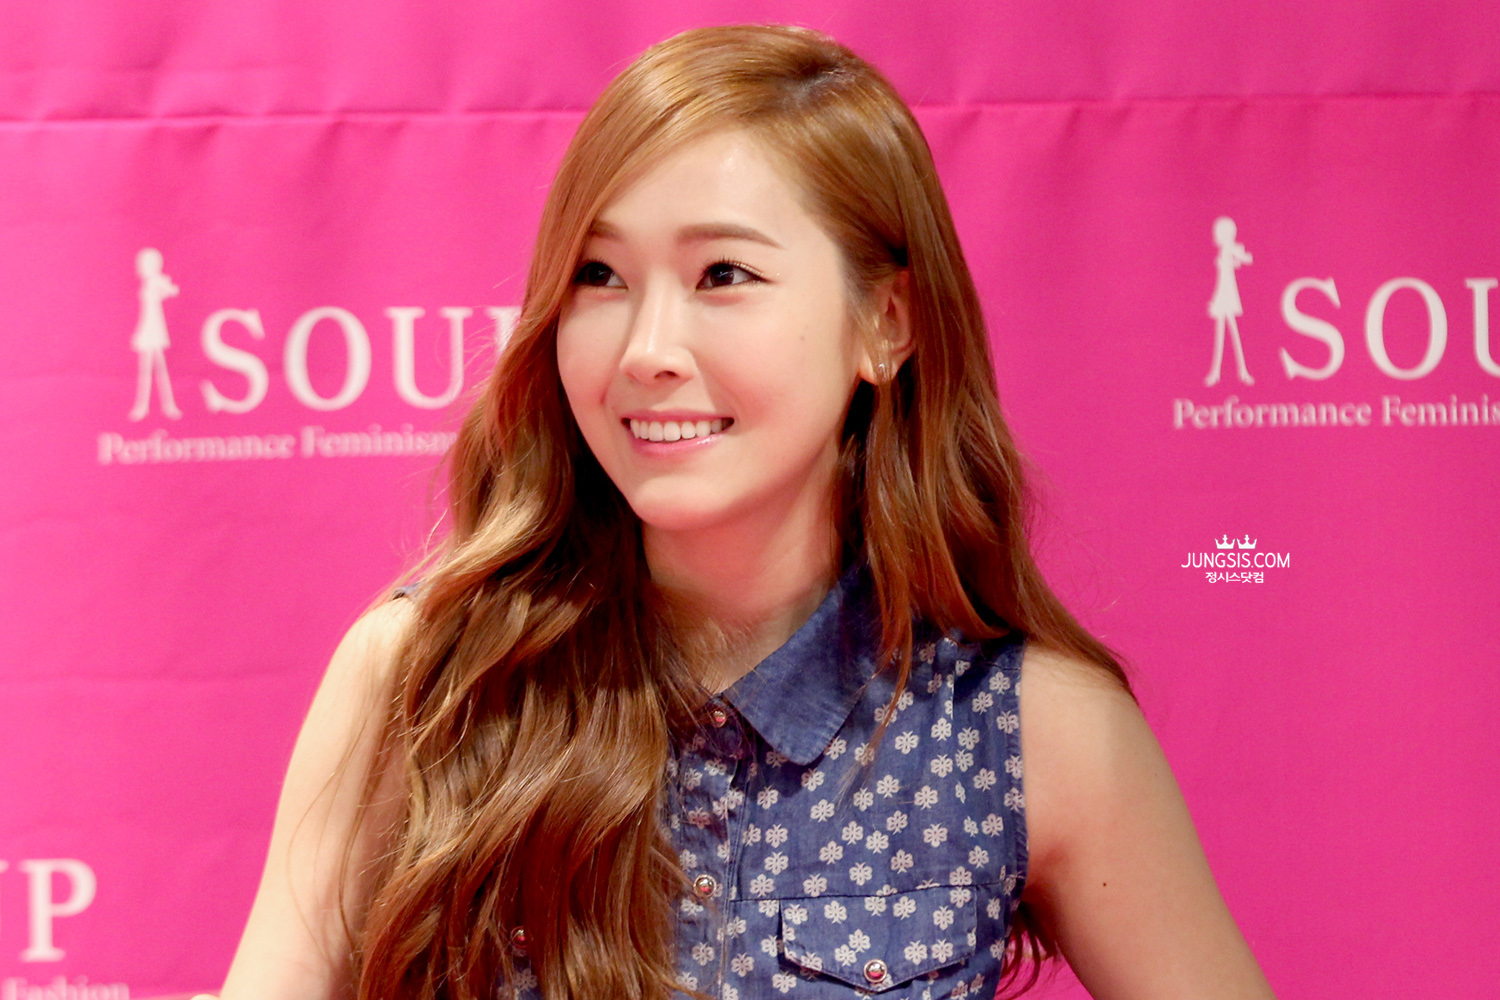 [PIC][04-04-2014]Jessica tham dự buổi fansign cho thương hiệu "SOUP" vào trưa nay - Page 3 2109F44153A448C034A9AF